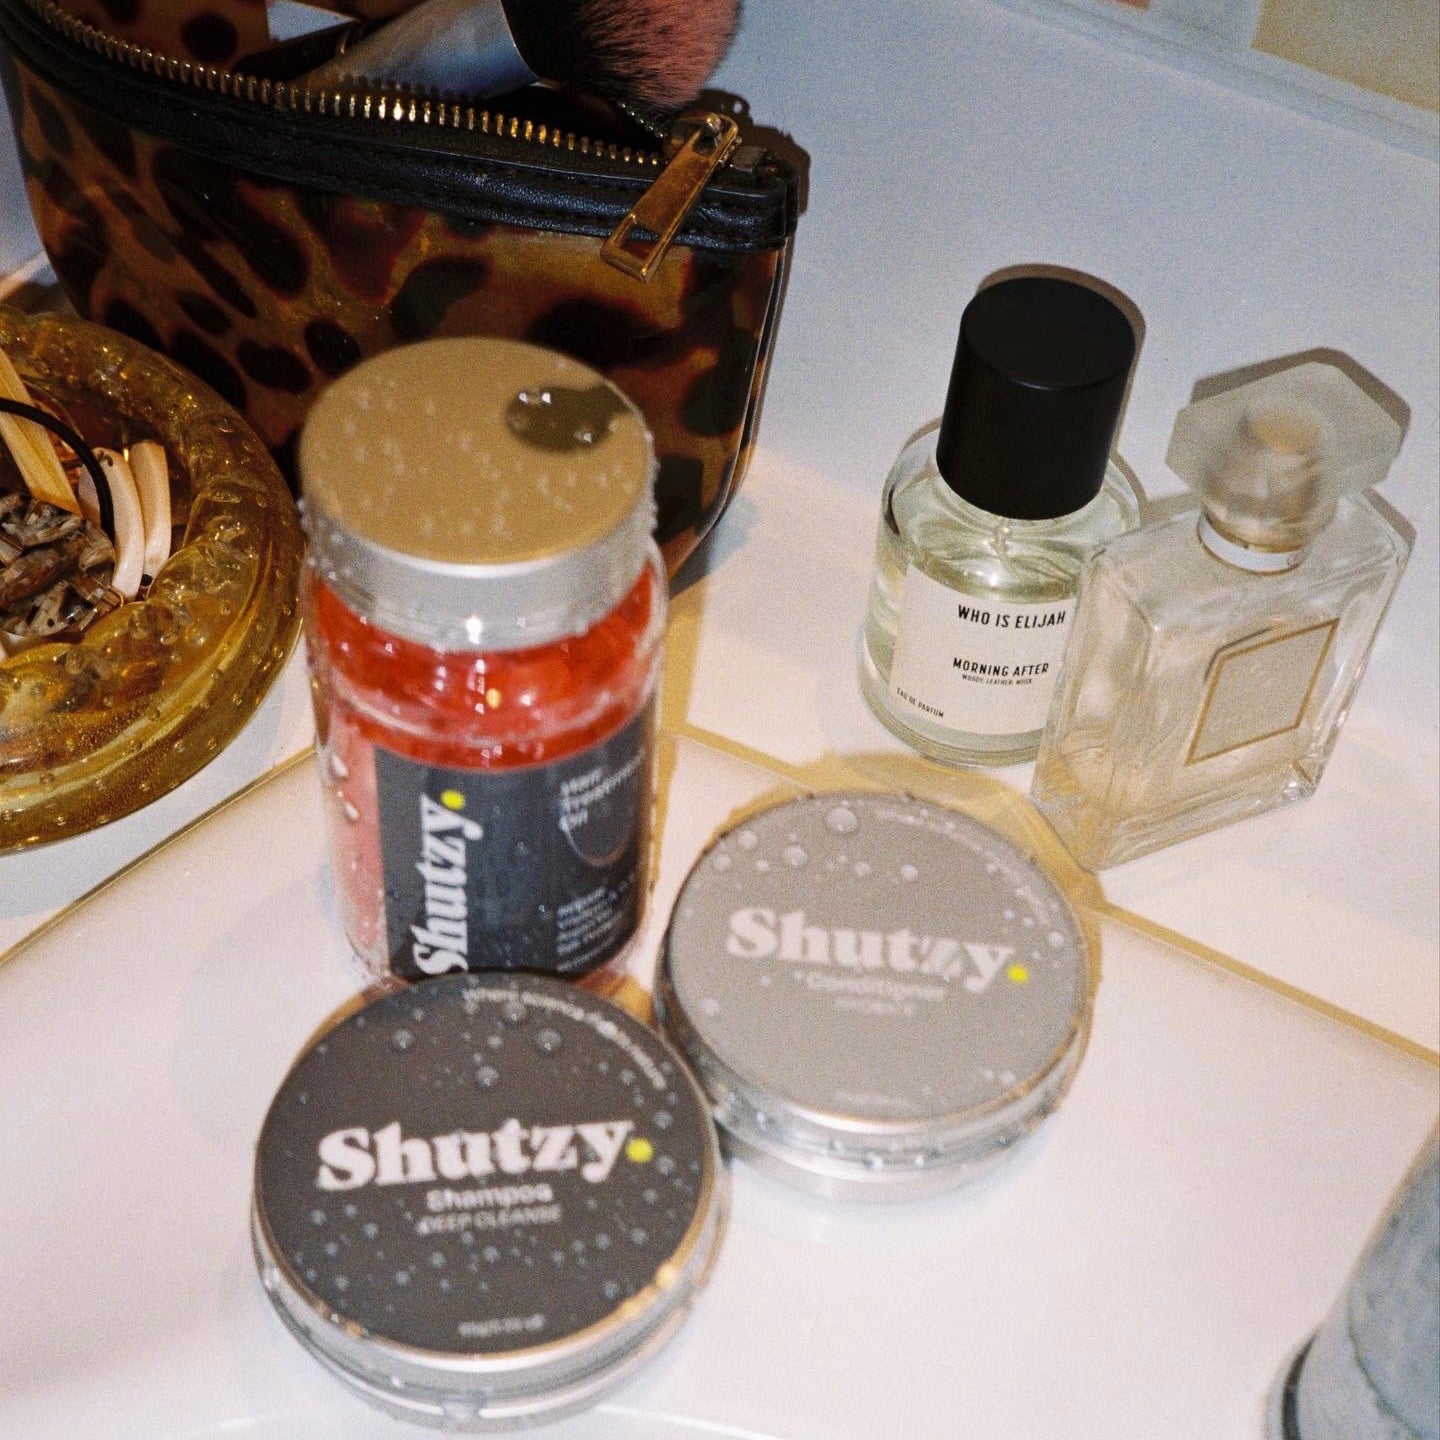 SHUTZY Shampoo Bar